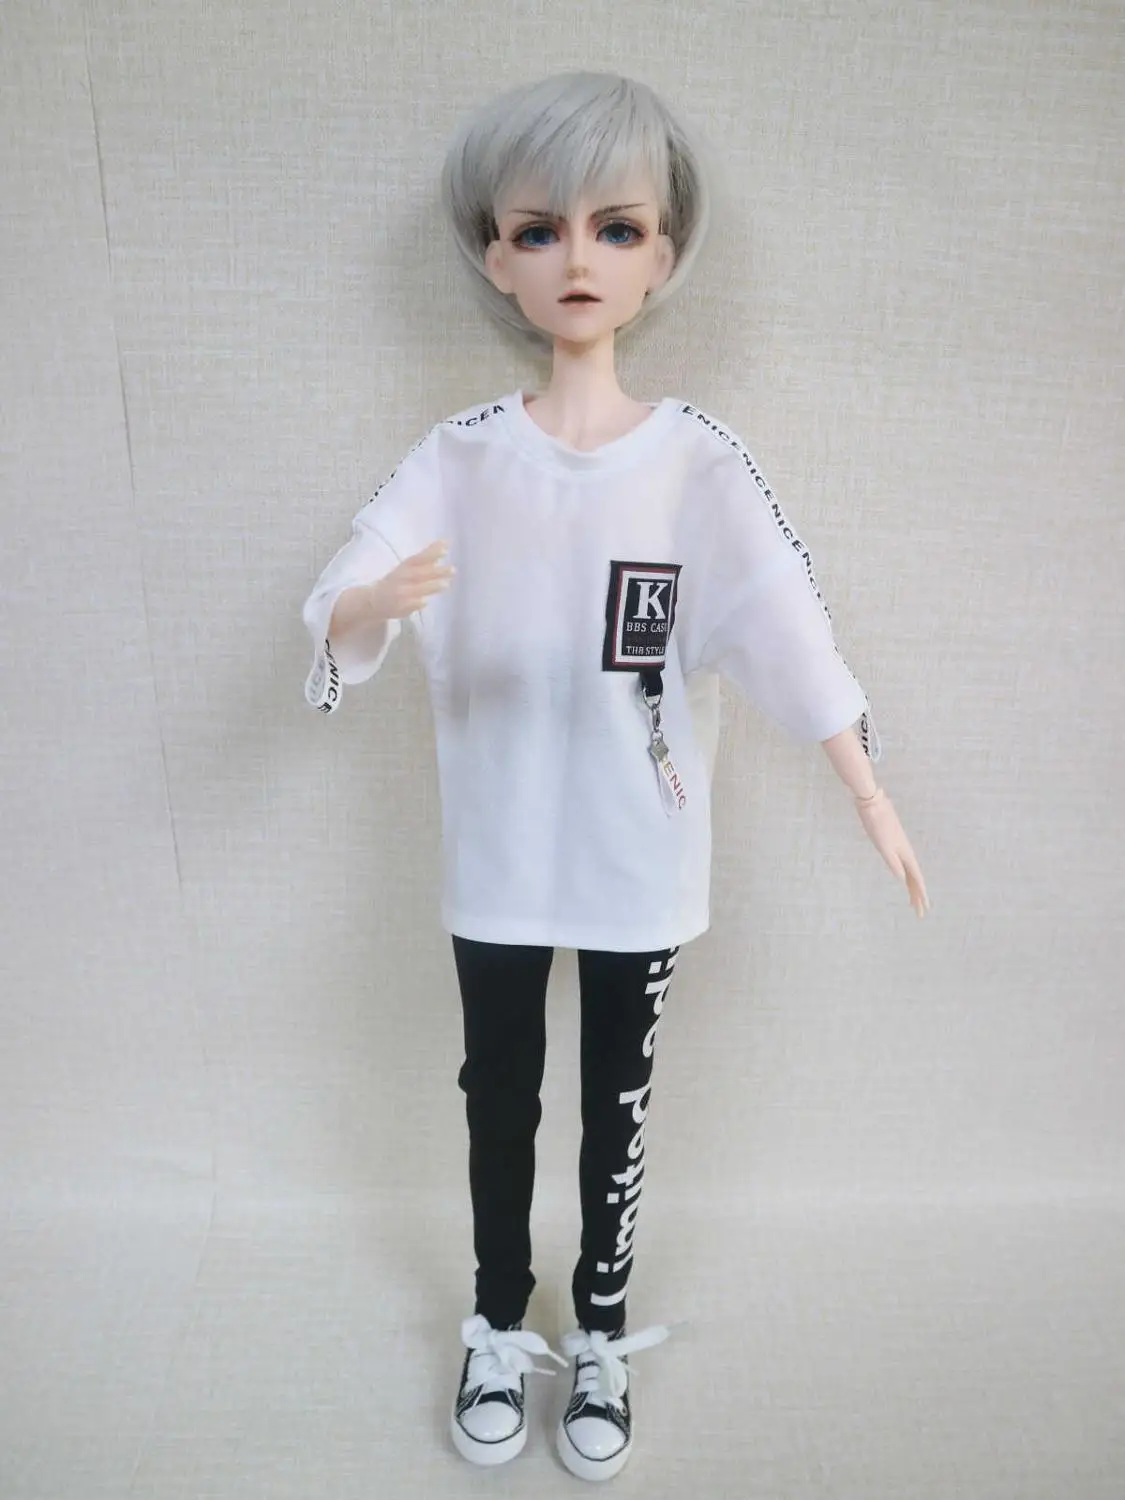 Индивидуальные мужские BJD куклы DIY пластиковая кукла 24 шарнира шарнирная кукла мальчик куклы - Цвет: doll 1